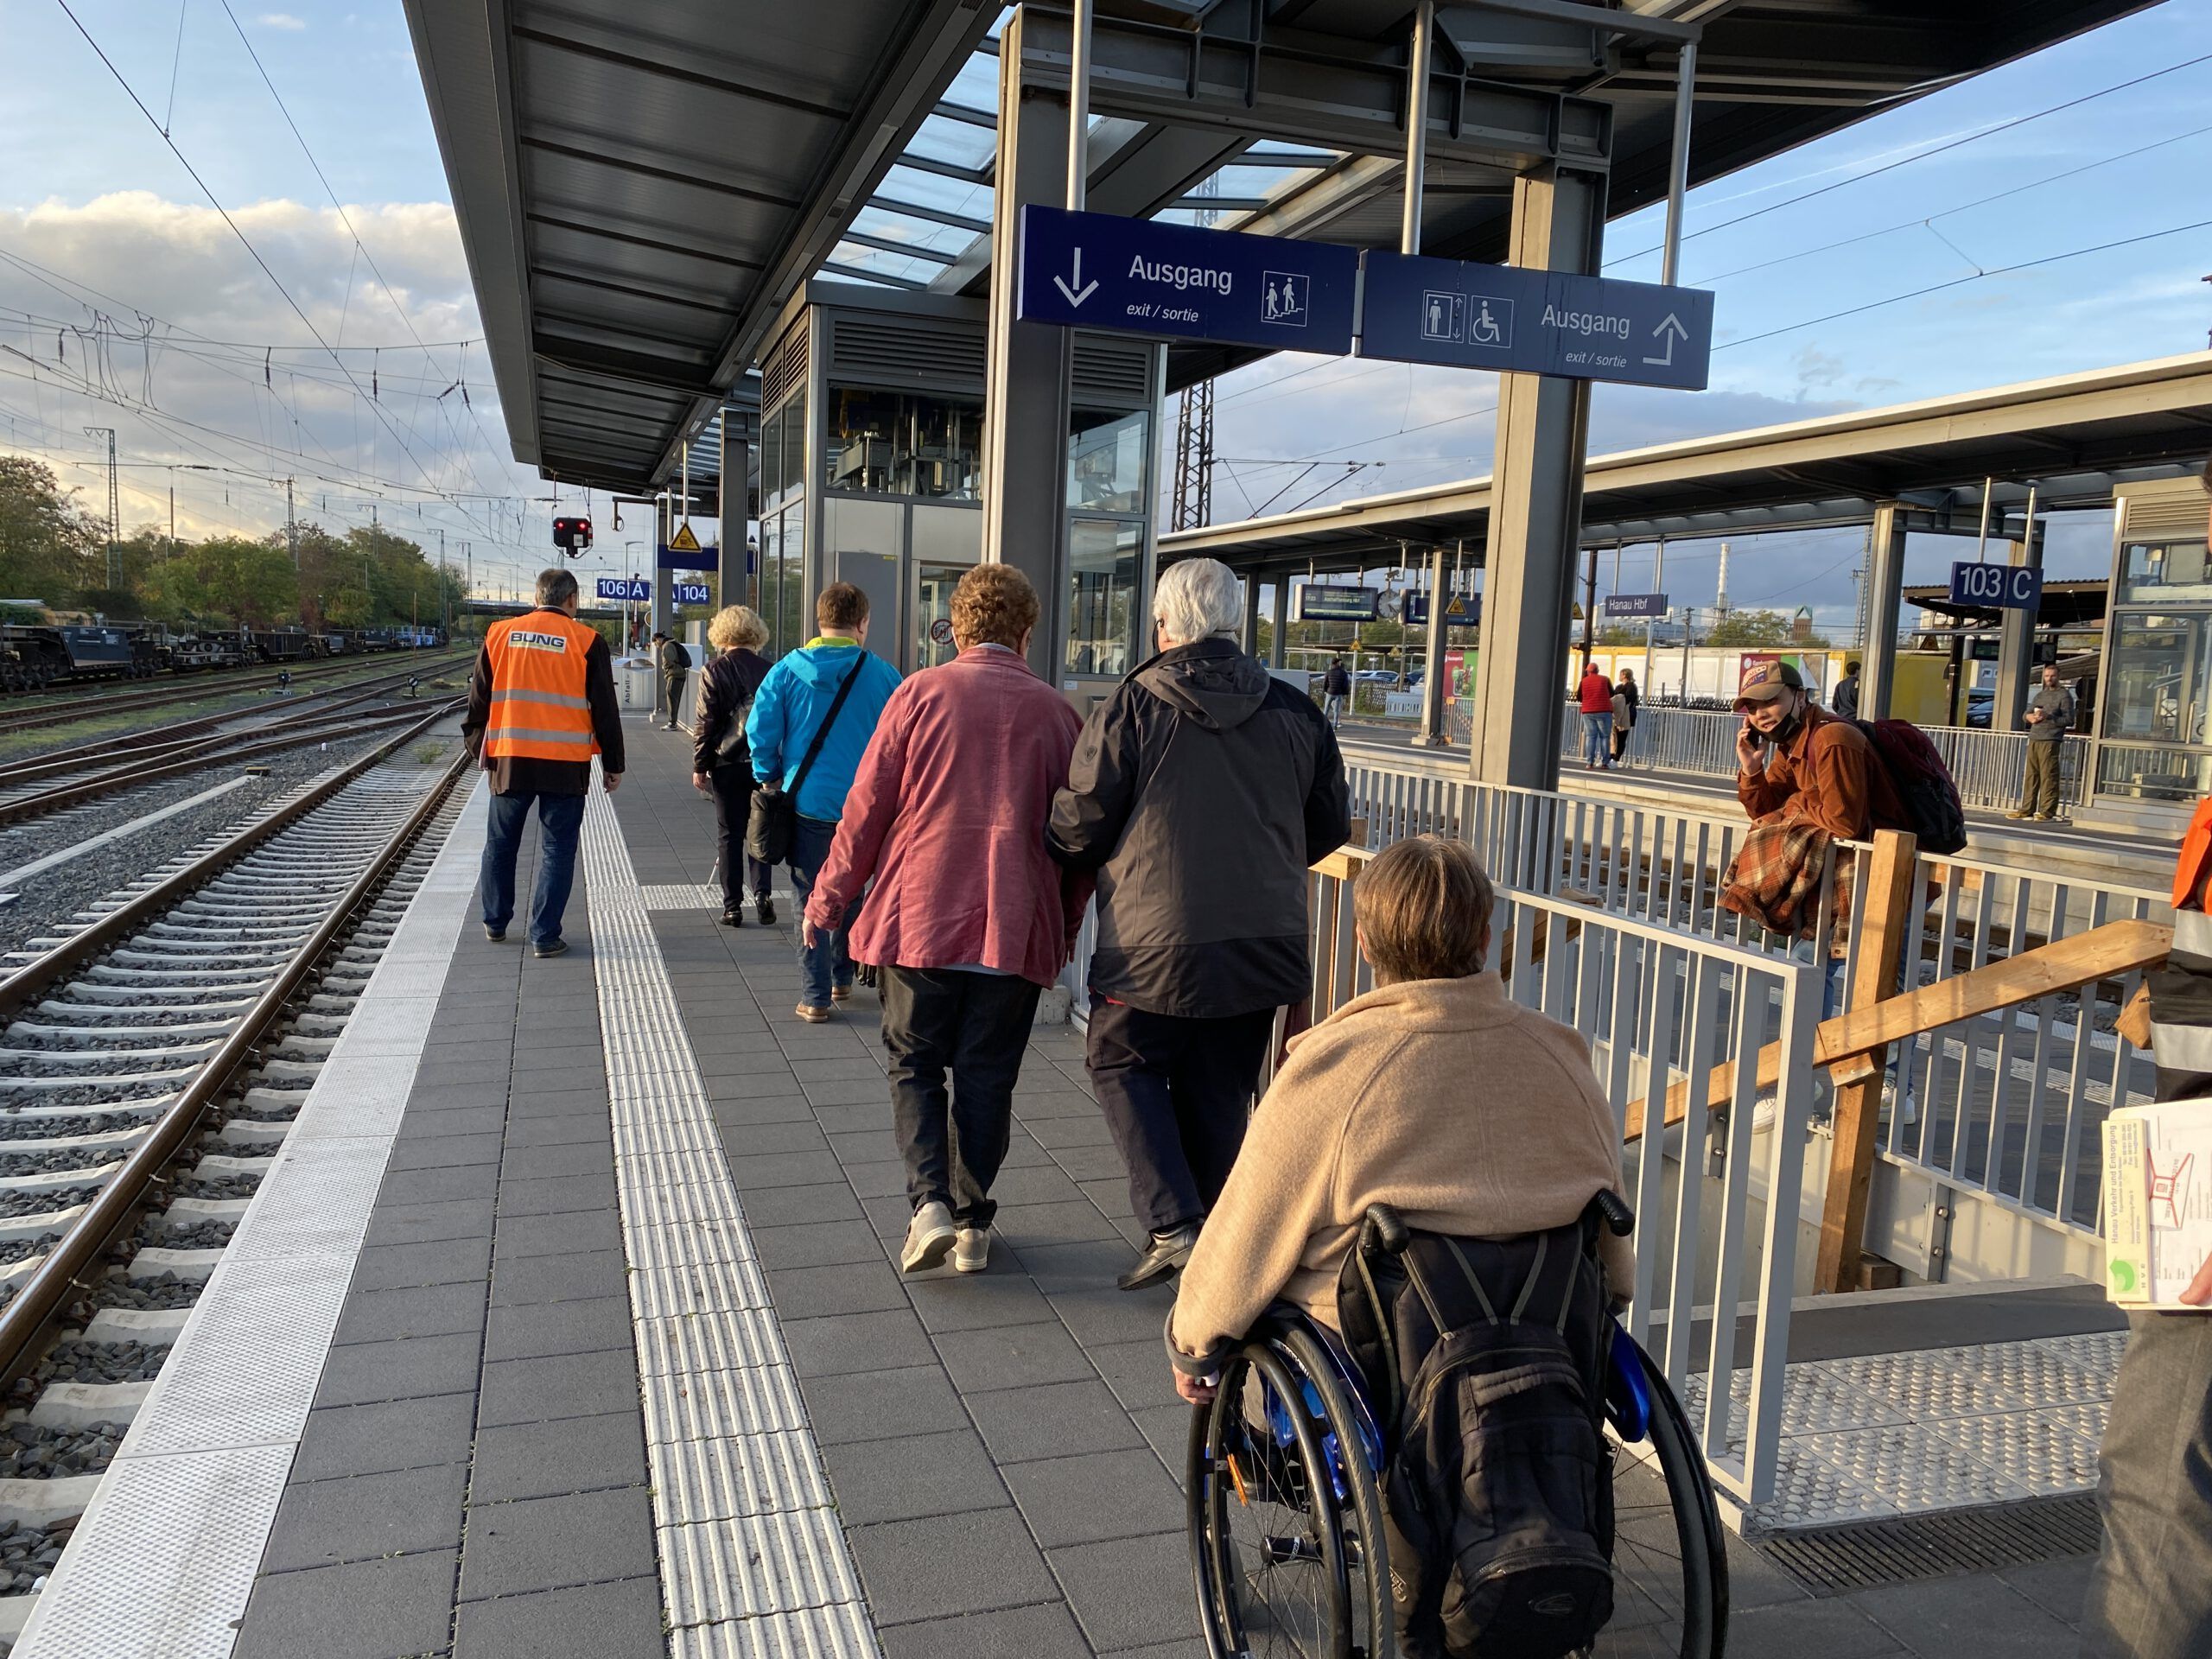 Eine Rollstuhlfahrerin und weitere Personen gehen einen Bahnsteig entlang. Weiße Leitstreifen heben sich von der grauen Bodenfliesen ab.